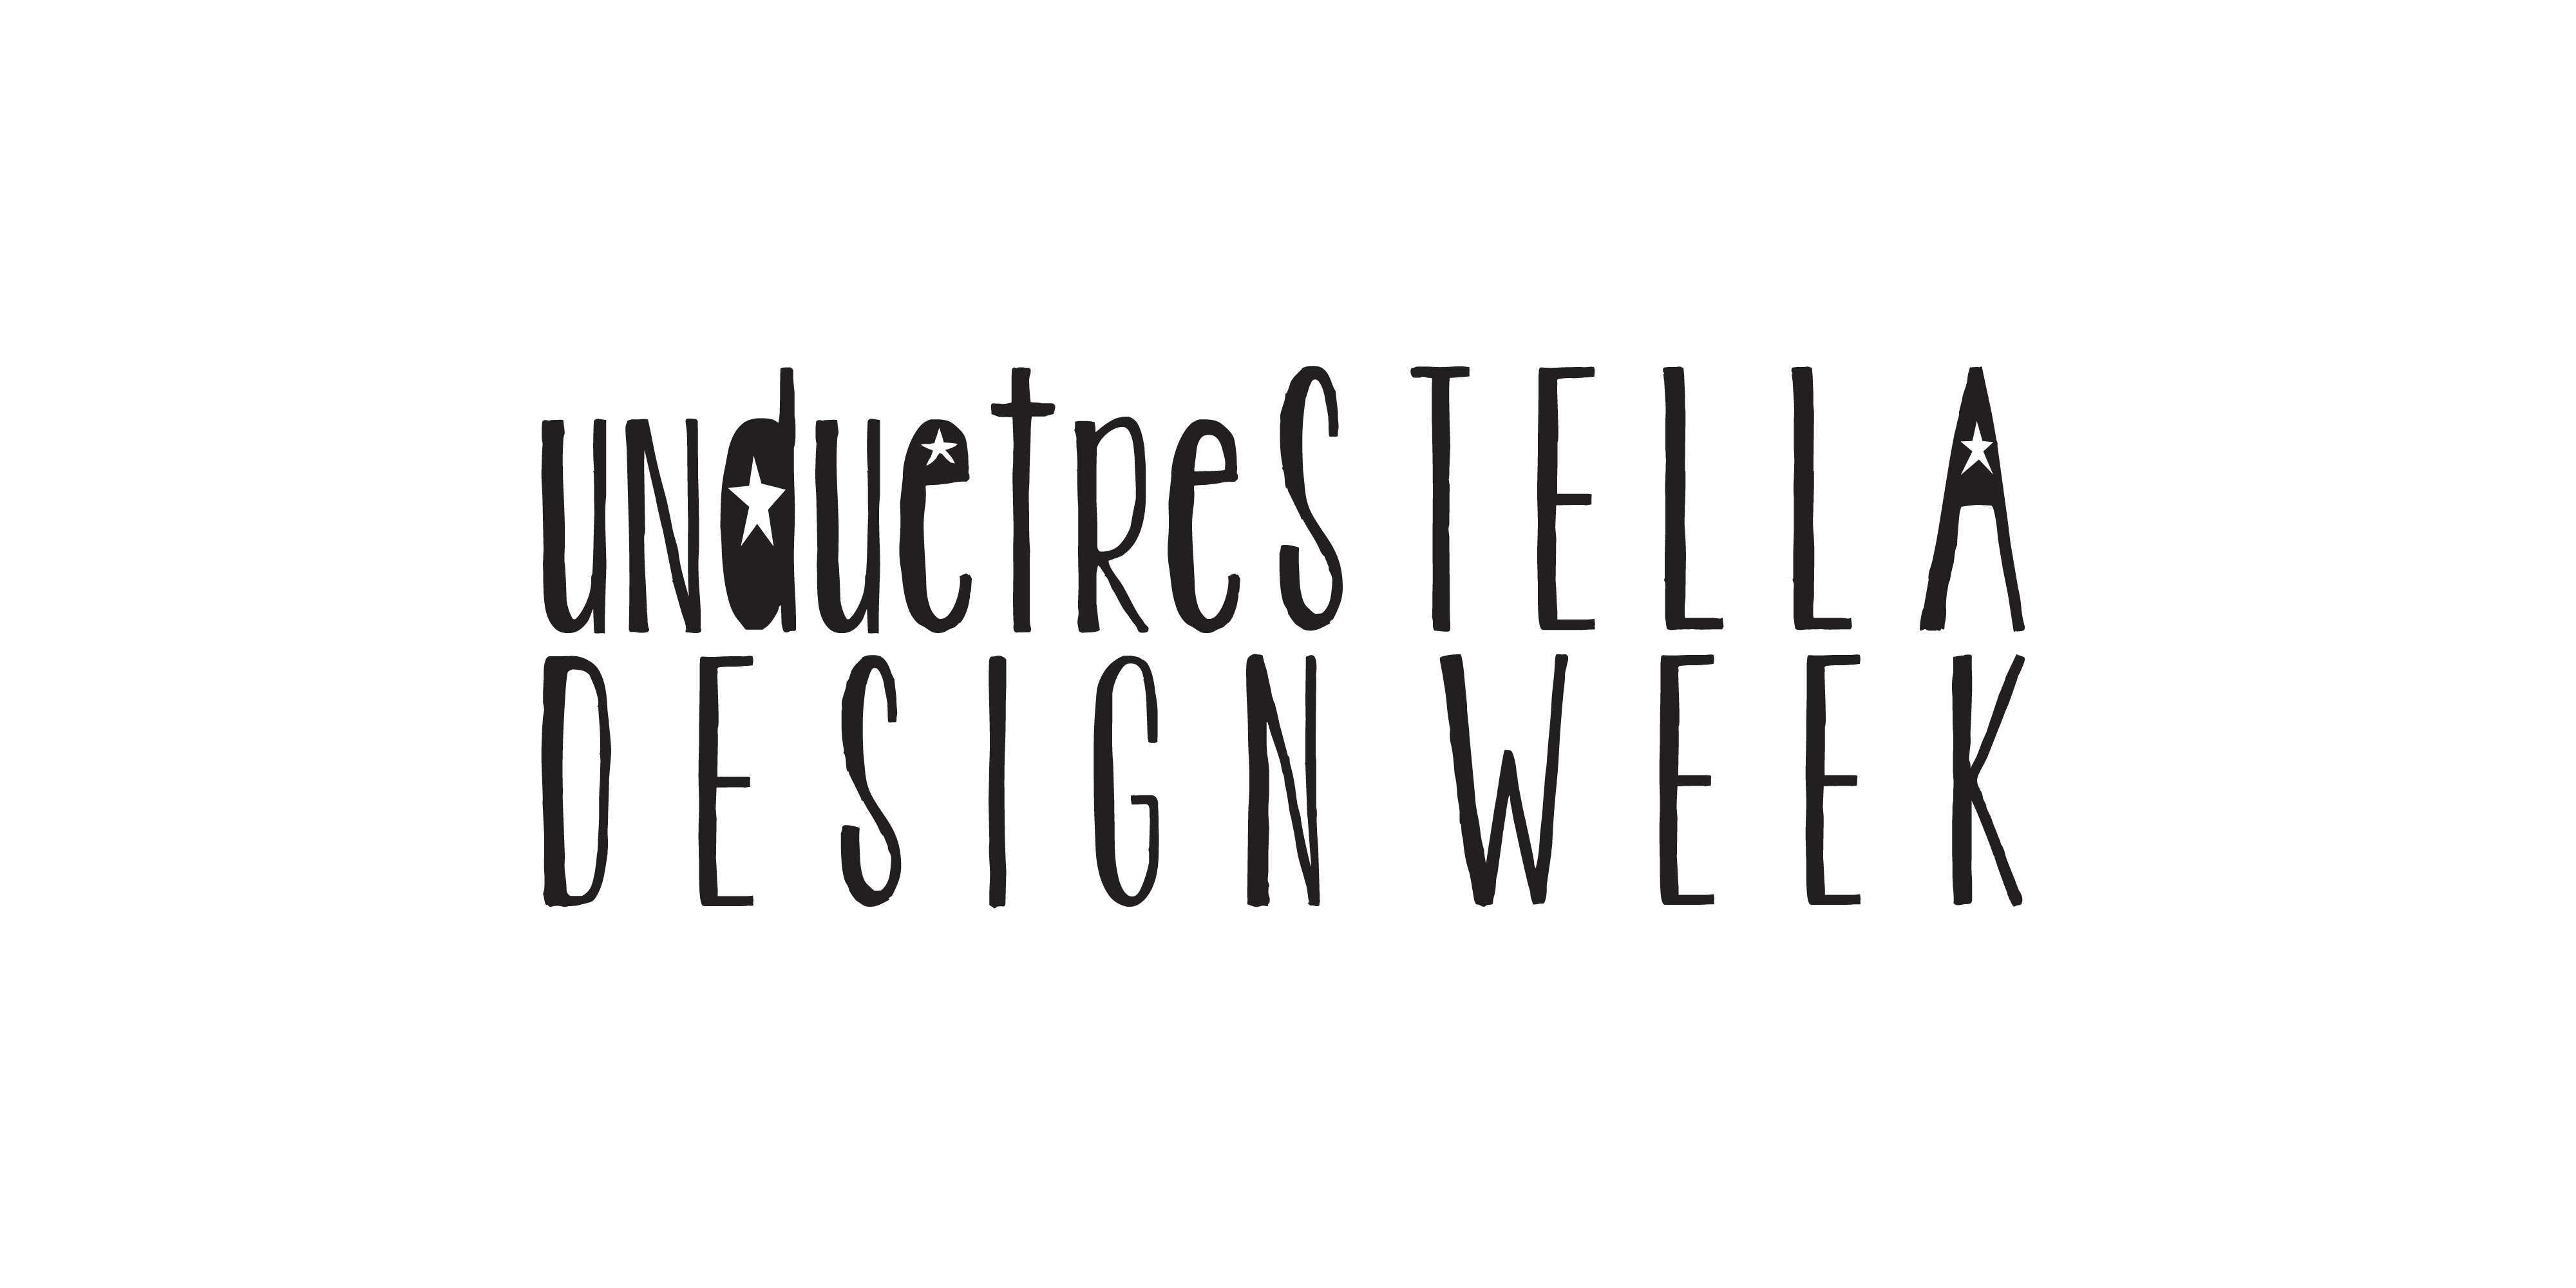 Unduetrestella Design Week